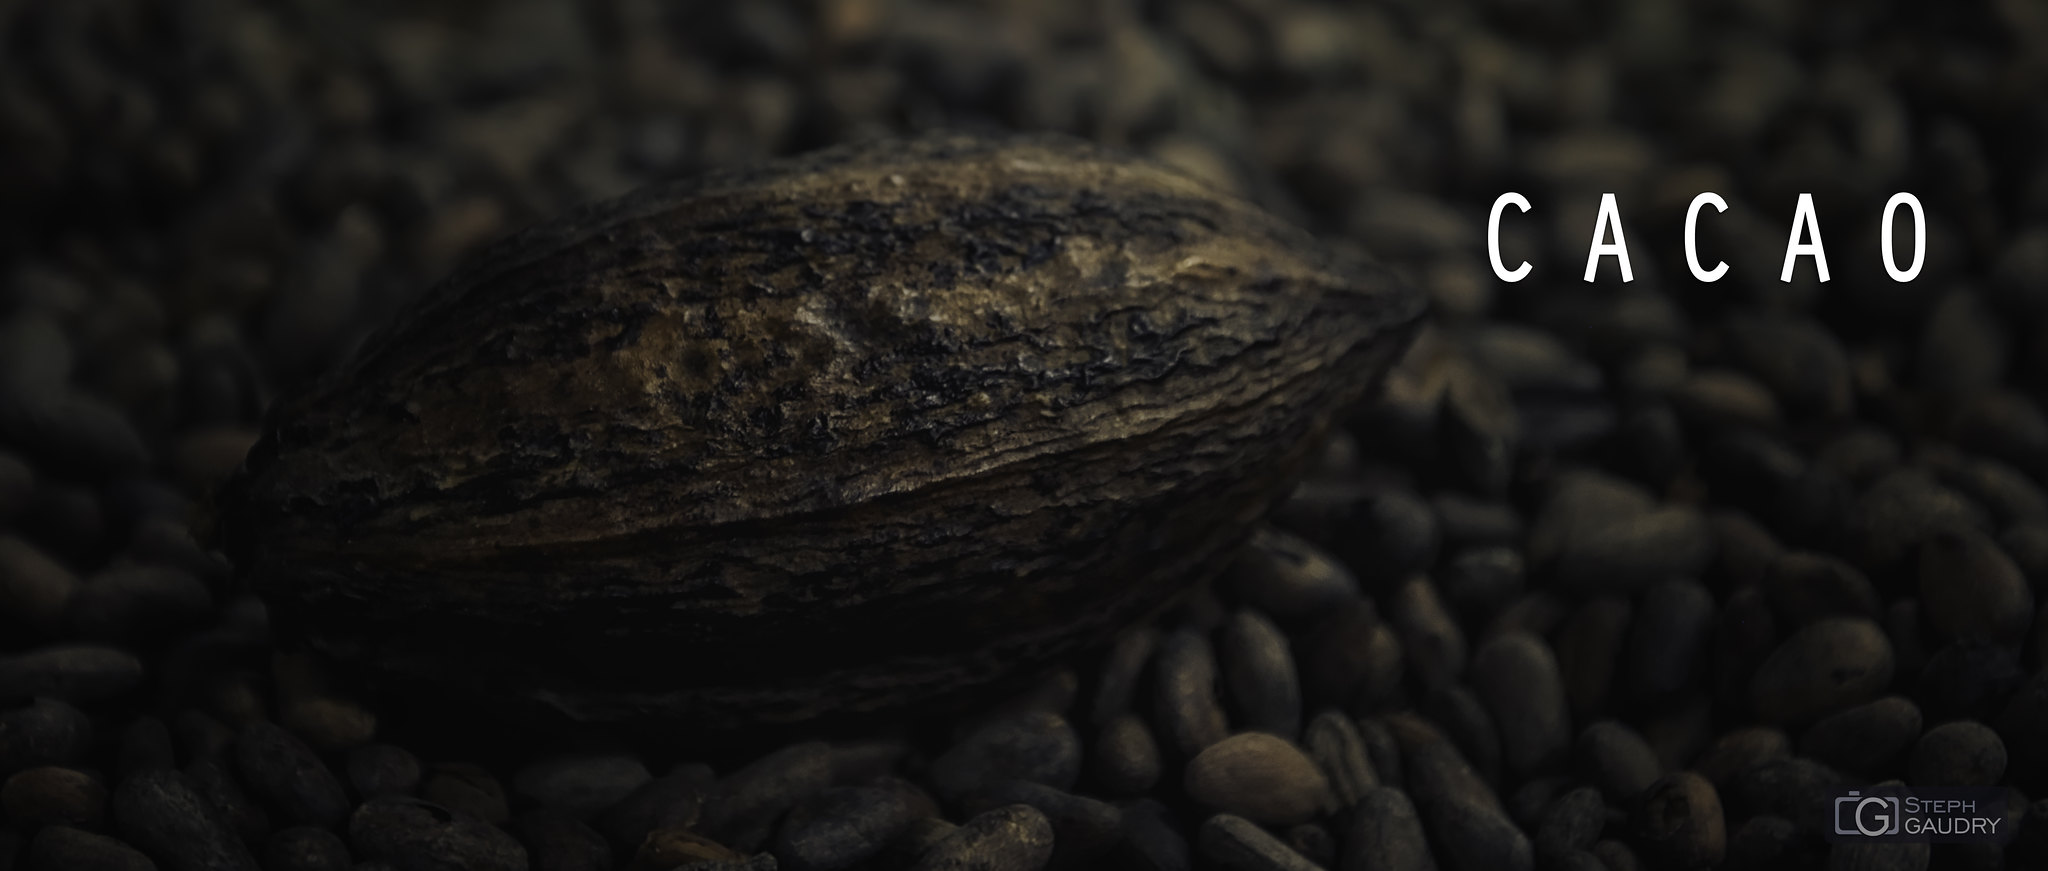 Cacao [Klicken Sie hier, um die Diashow zu starten]